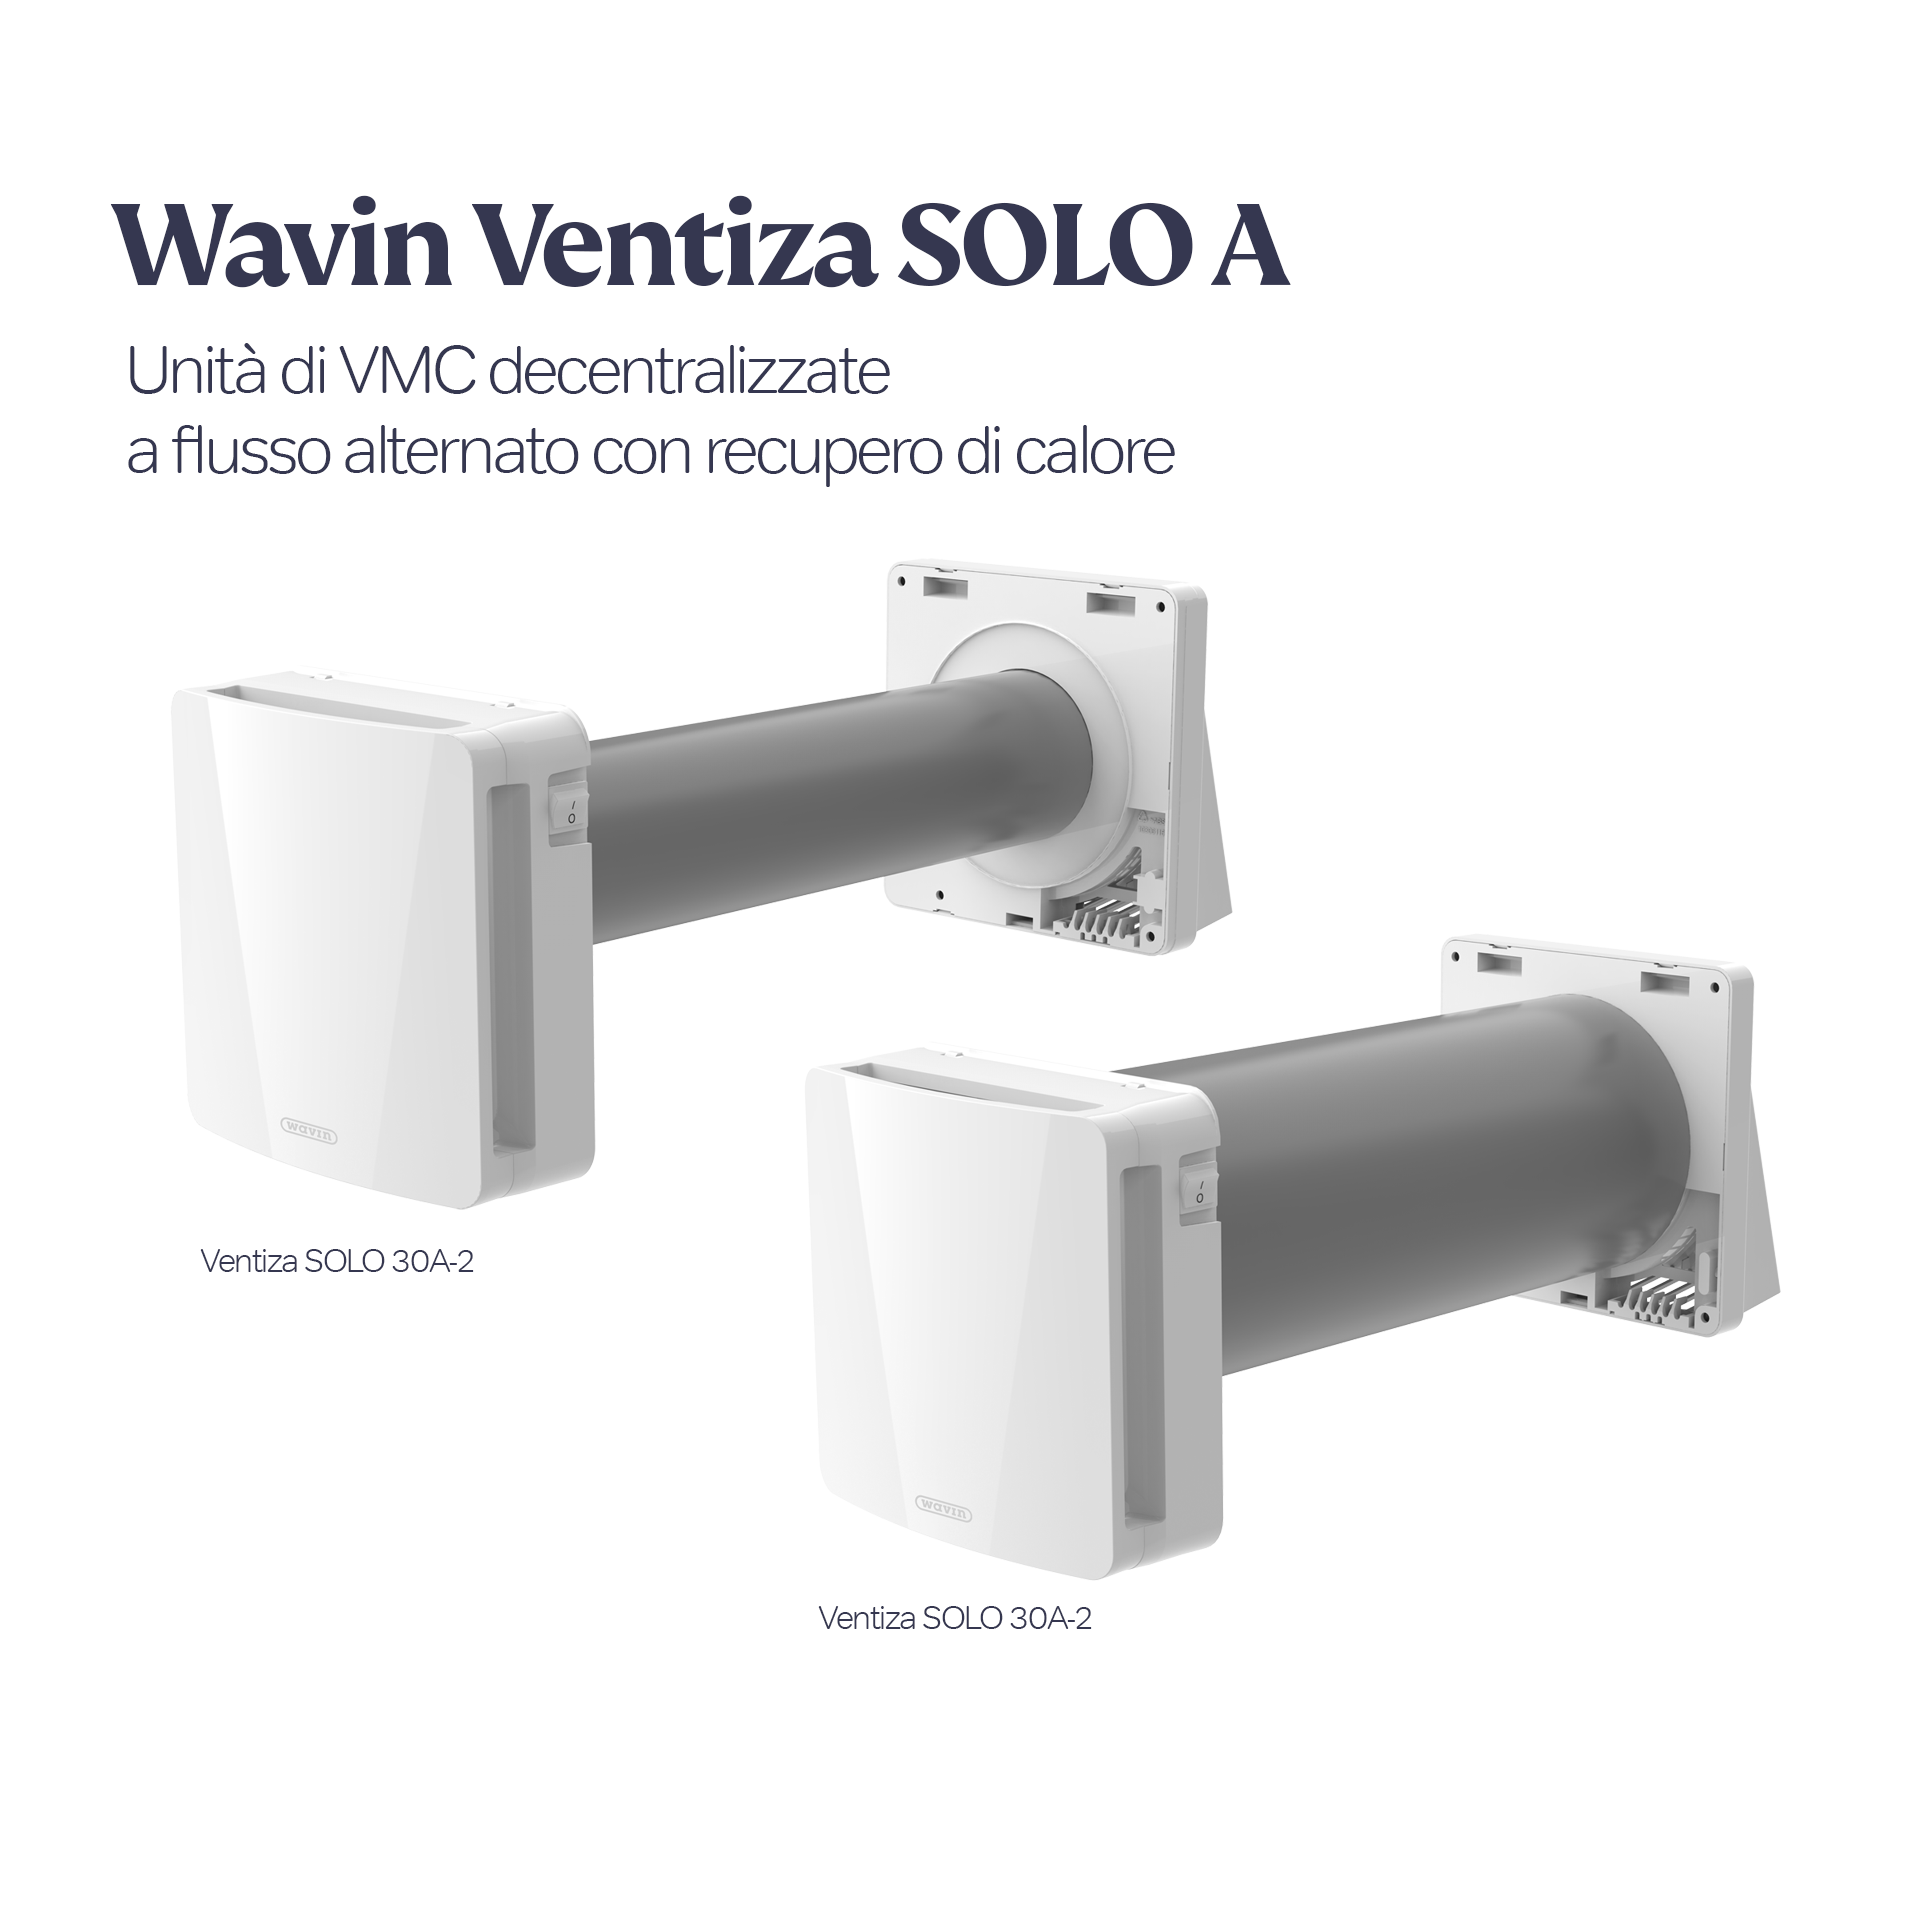 Wavin-Ventiza-SOLO-60A_01